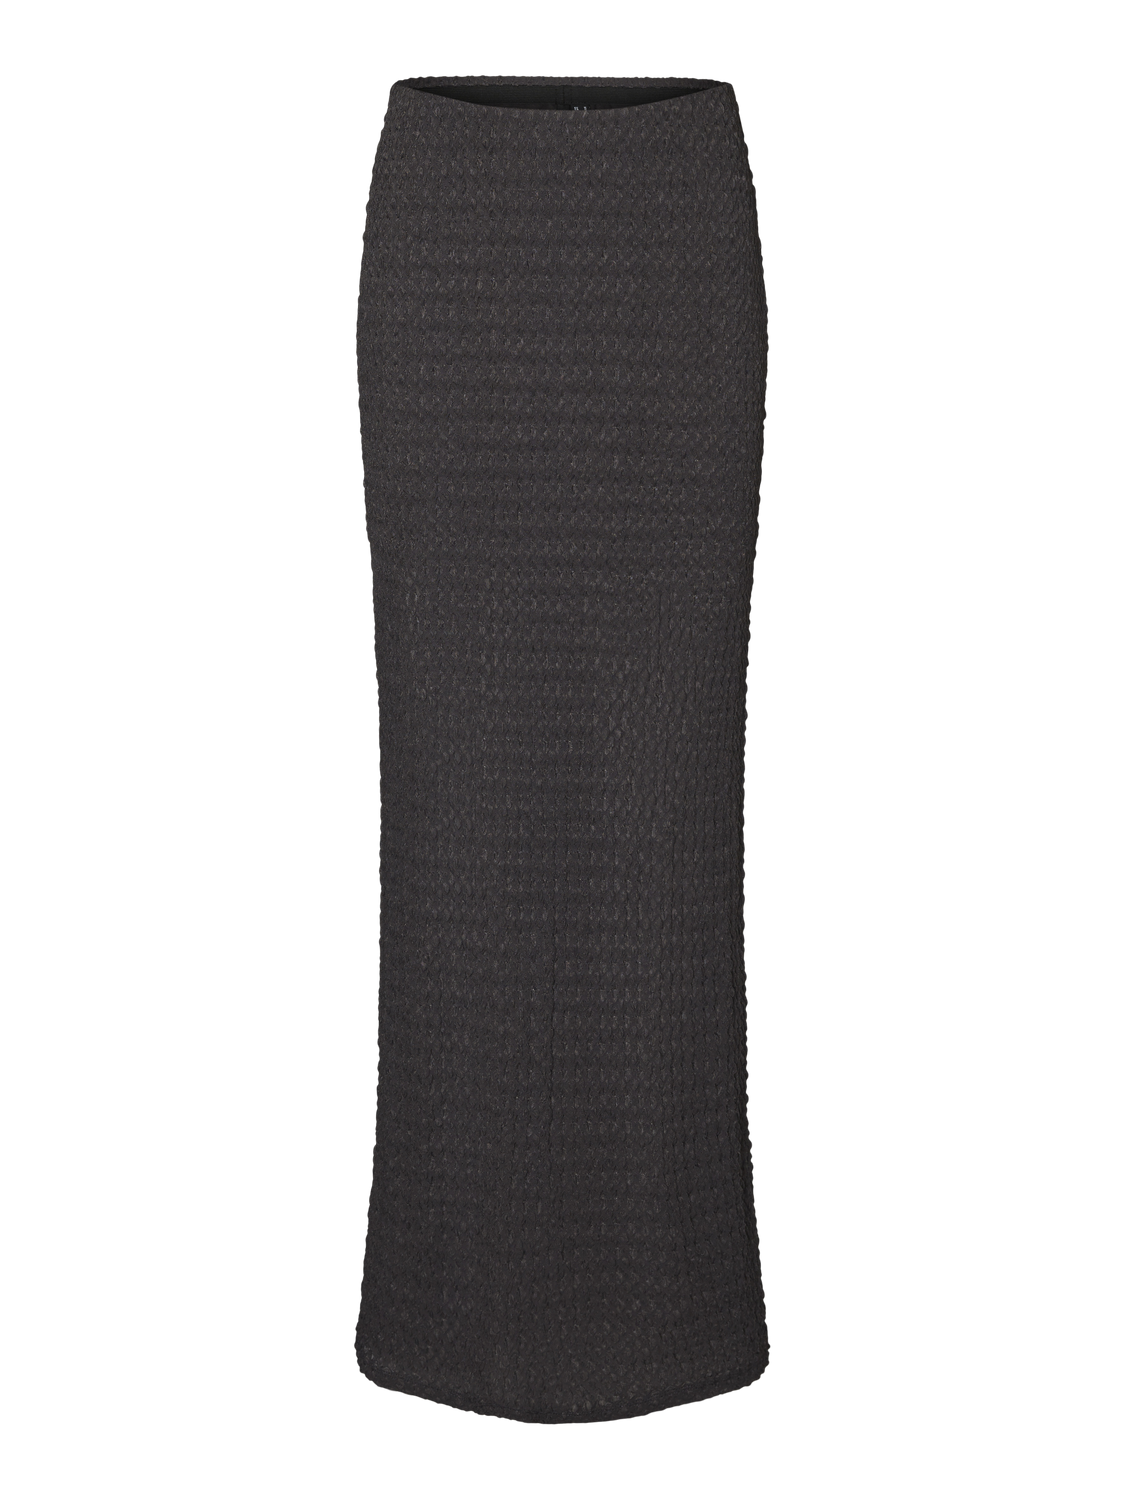 Vero Moda VMLESLIE Long Skirt -Asphalt - 10310363